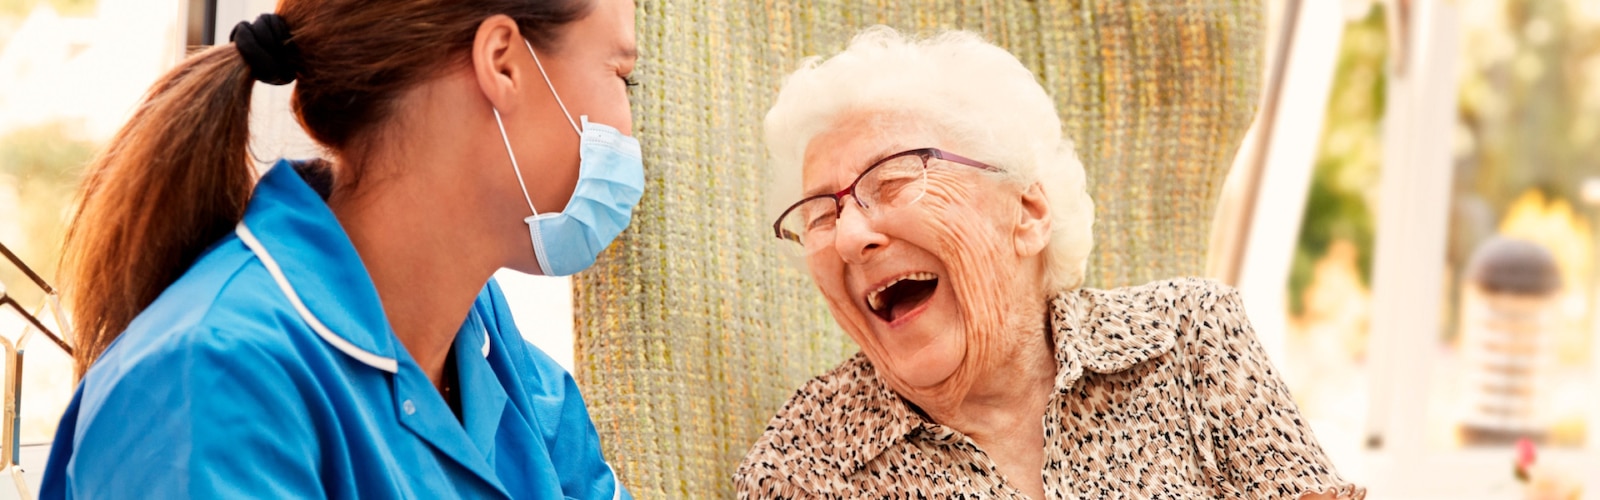 Een verpleegkundige en een oudere vrouw lachen